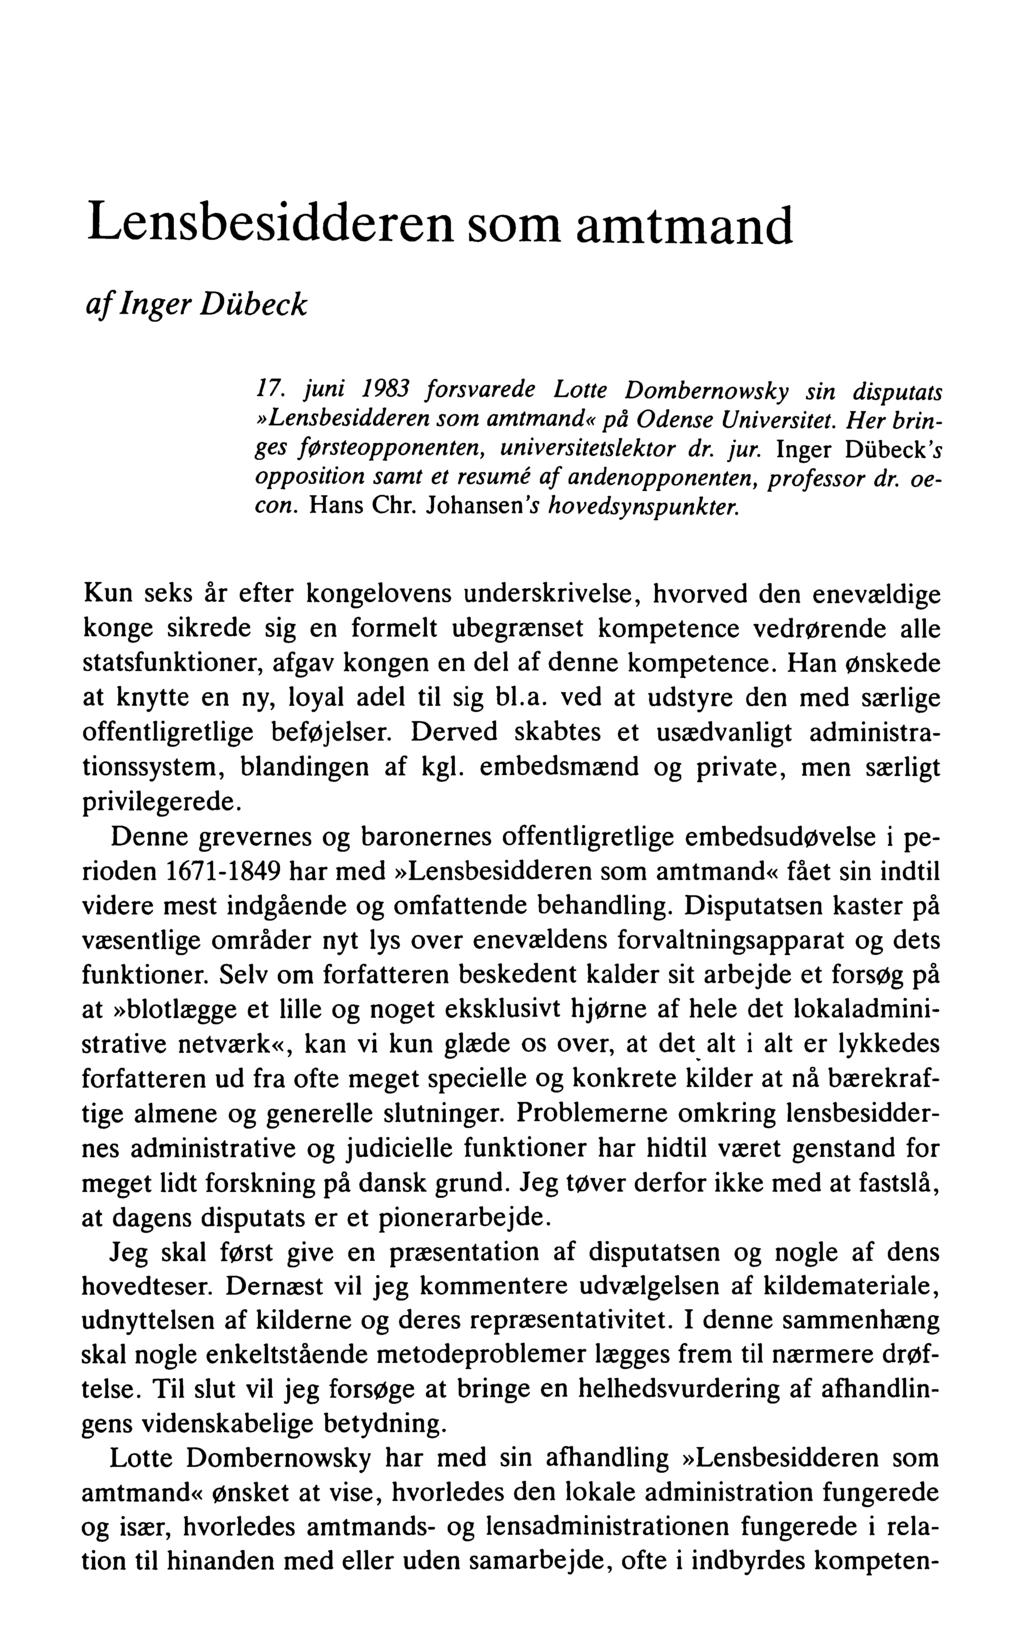 Lensbesidderen som amtmand afinger Dübeck 17. juni 1983 forsvarede Lotte Dombernowsky sin disputats»lensbesidderen som amtmand«på Odense Universitet.